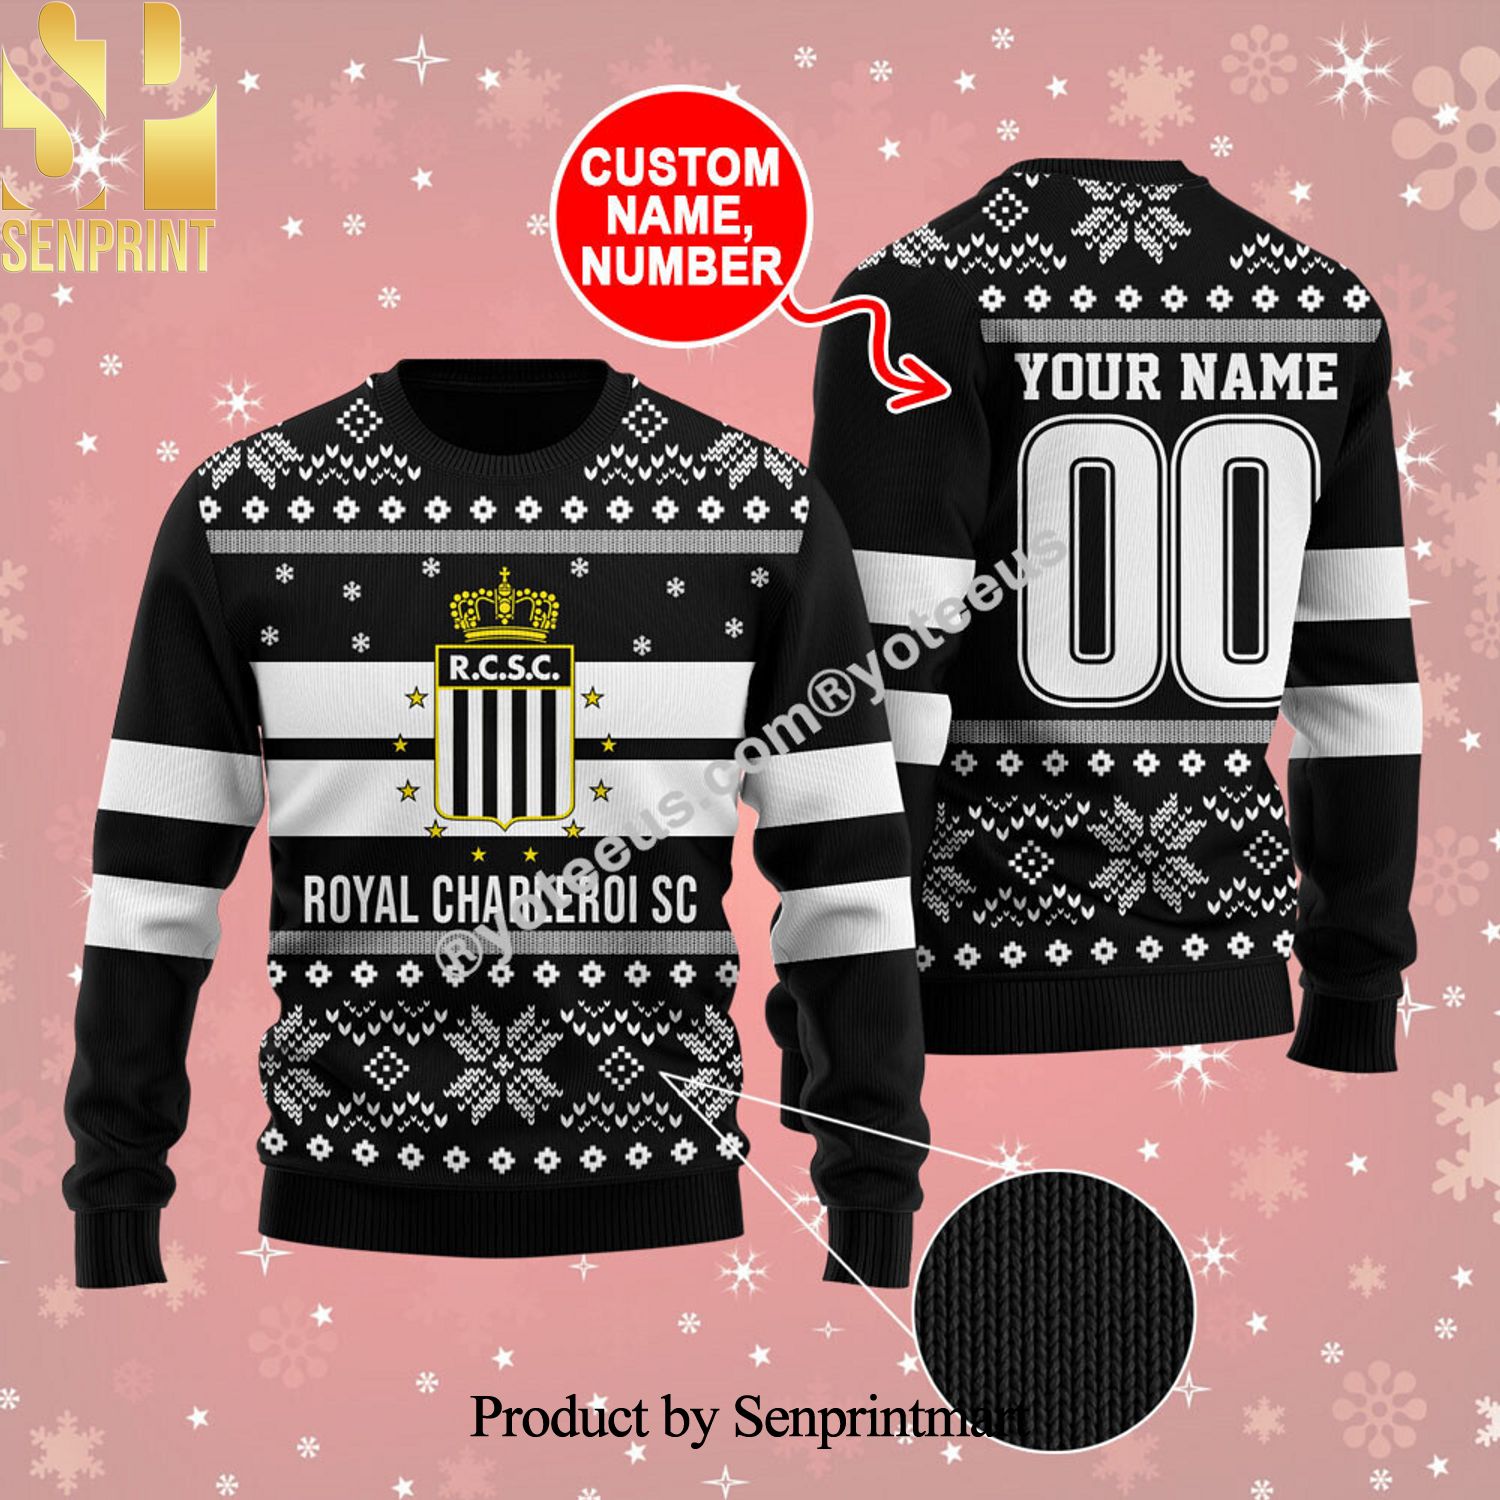 Royal Charleroi SC Ugly Christmas Holiday Sweater